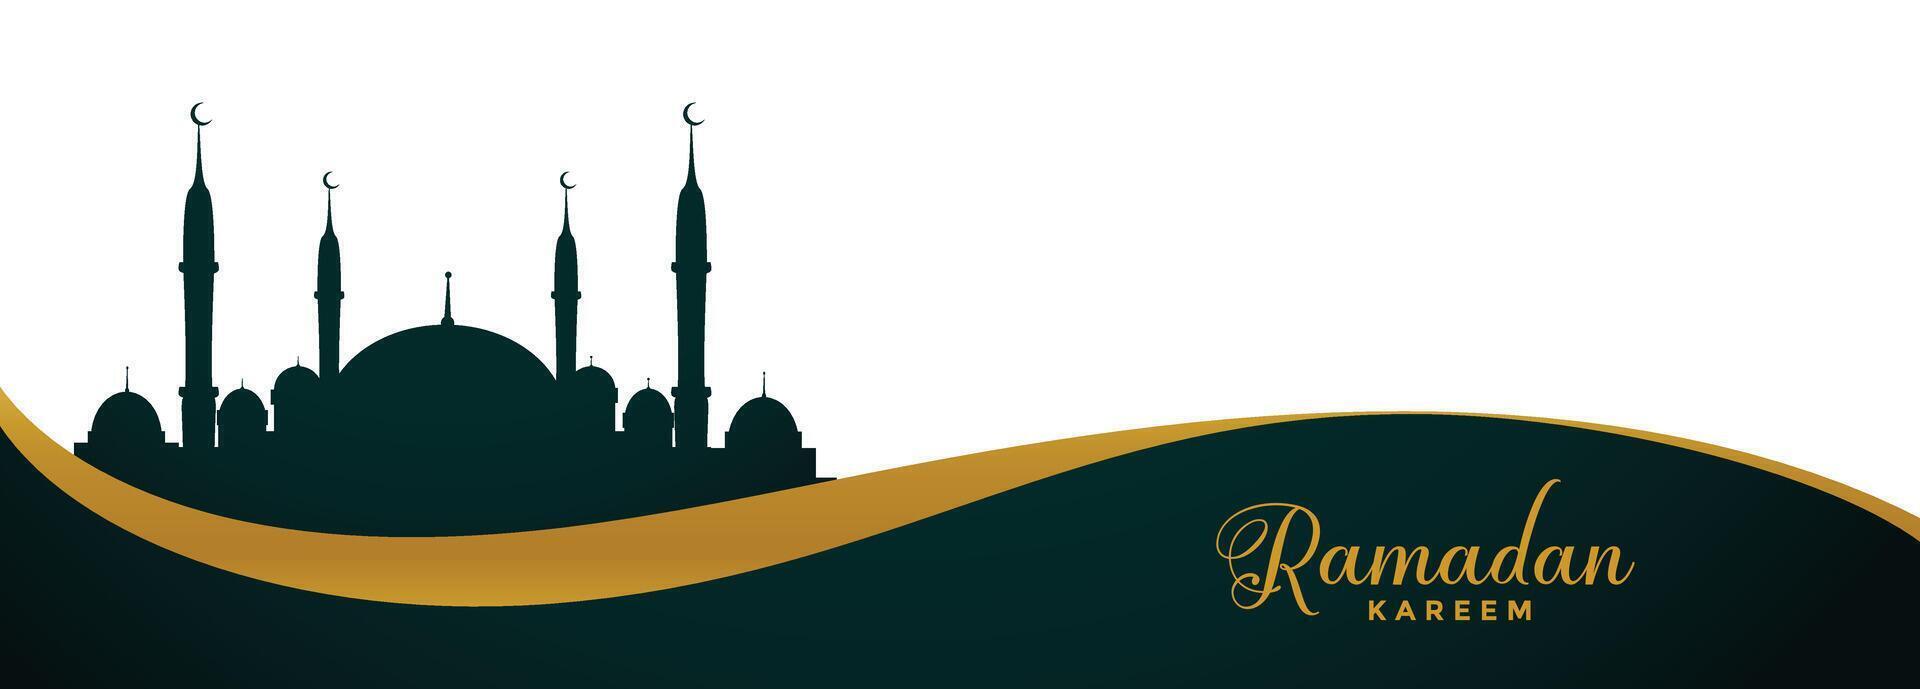 ramadan kareem wide banner with mosque design vector